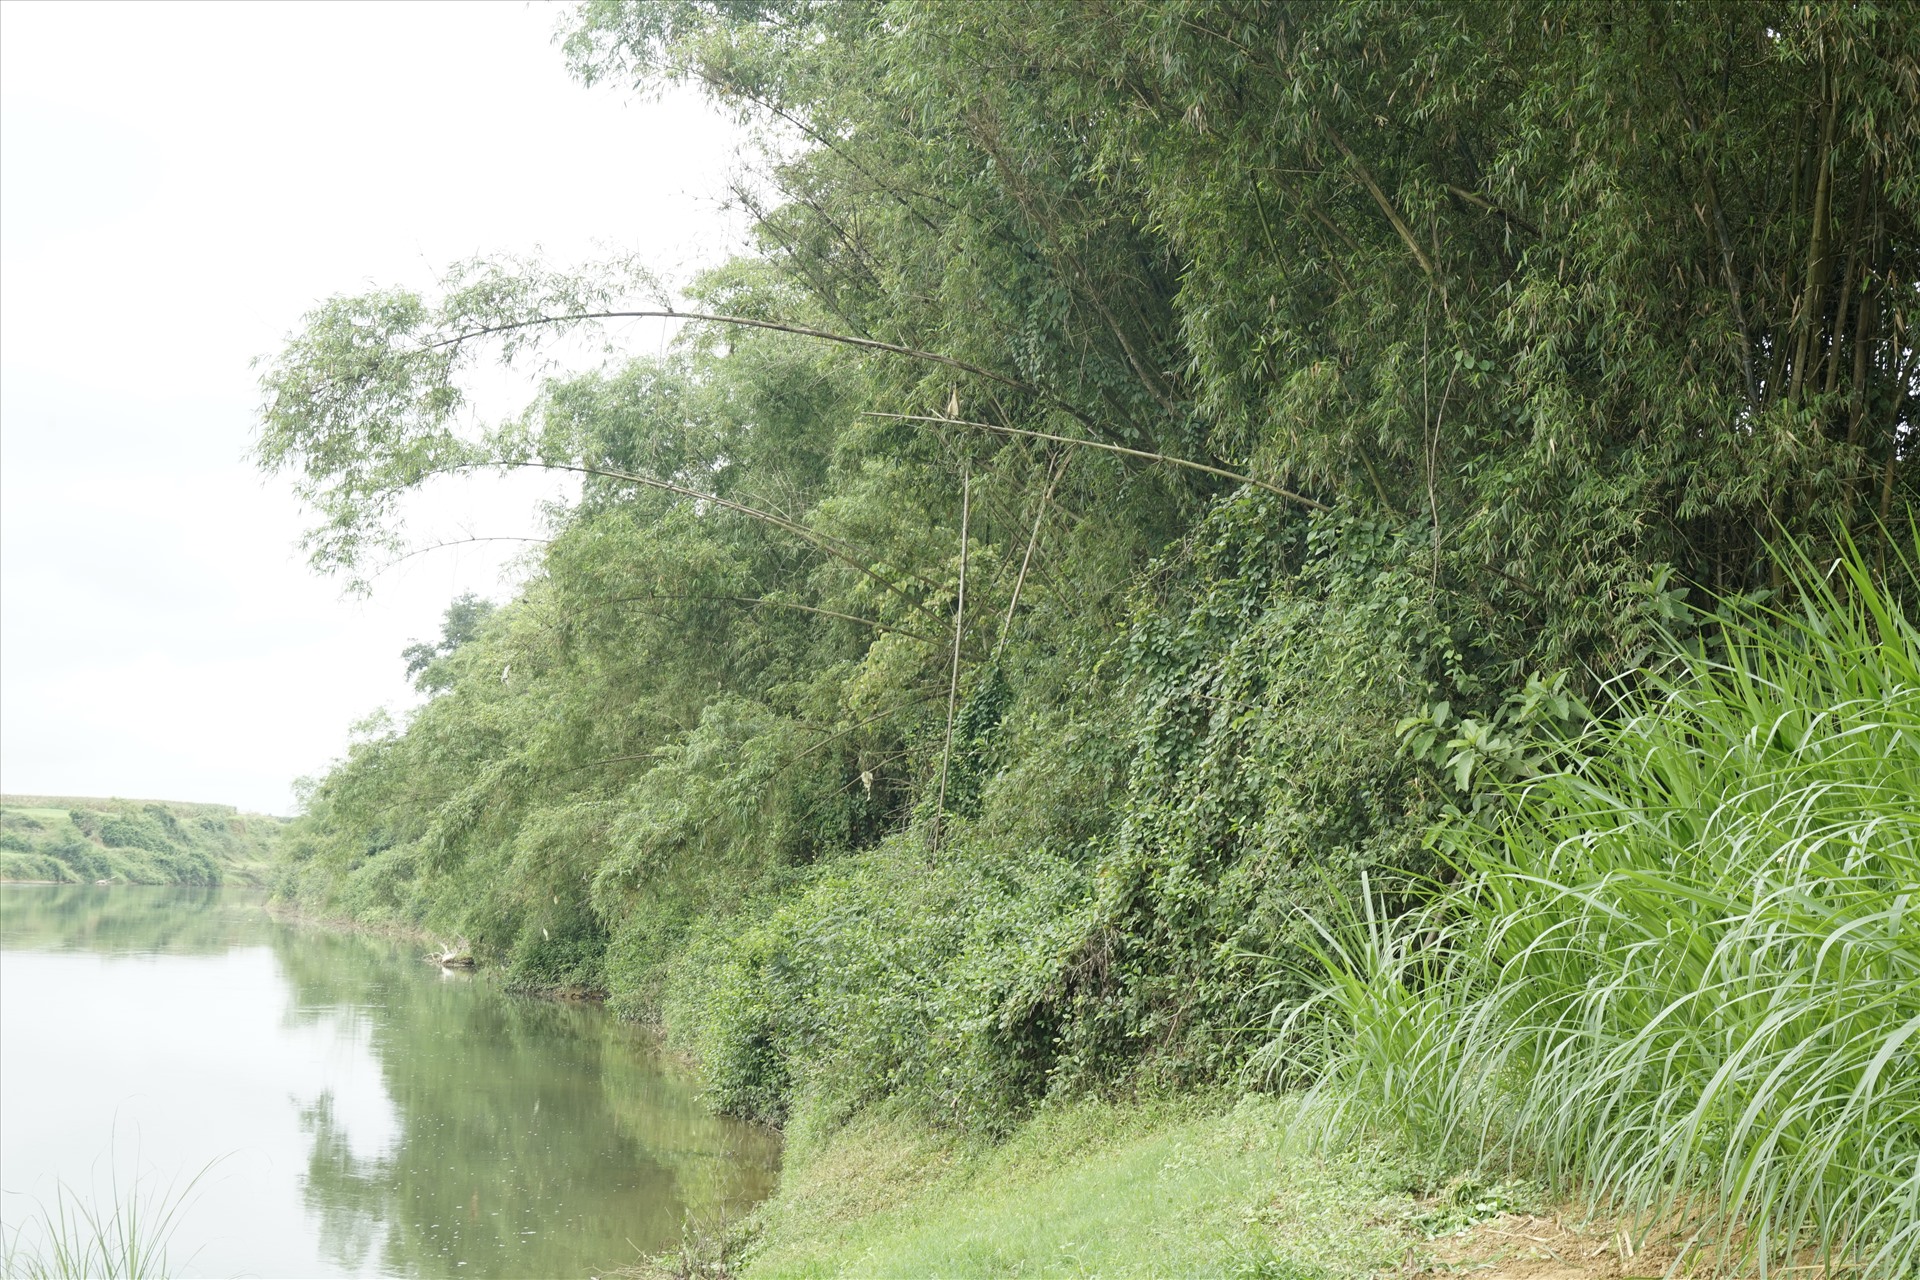 Huyện Hương Khê dự định chặt những hàng cây tre xanh tốt ven bãi bồi này để xây kè chống sạt lở 48 tỉ. Ảnh: Trần Tuấn